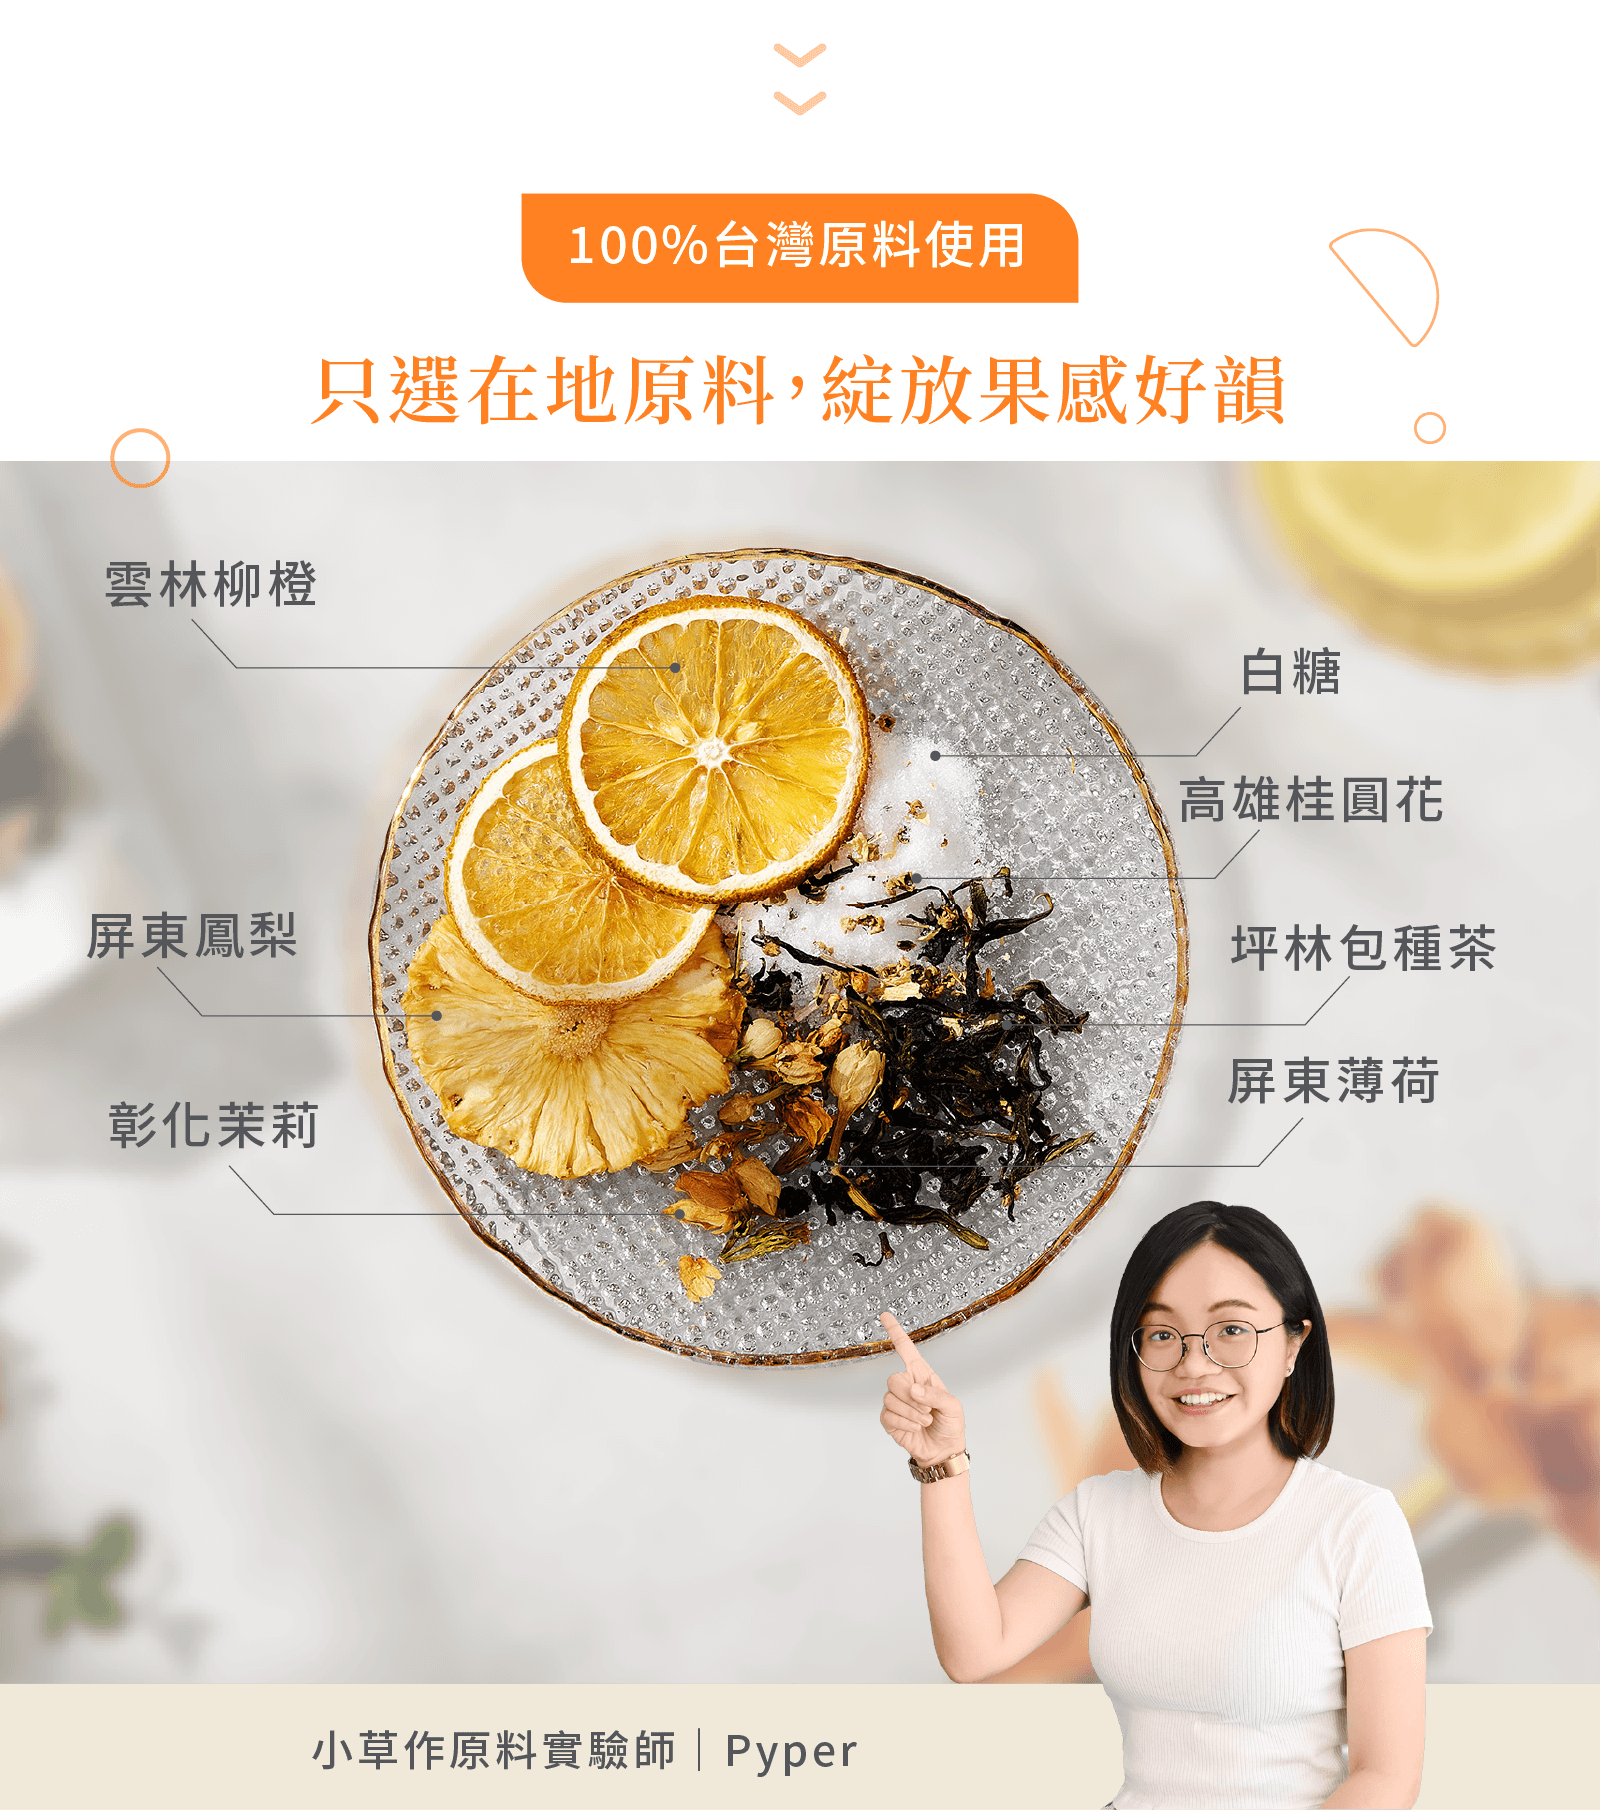 100%台灣原料製成的果茶酒香料包